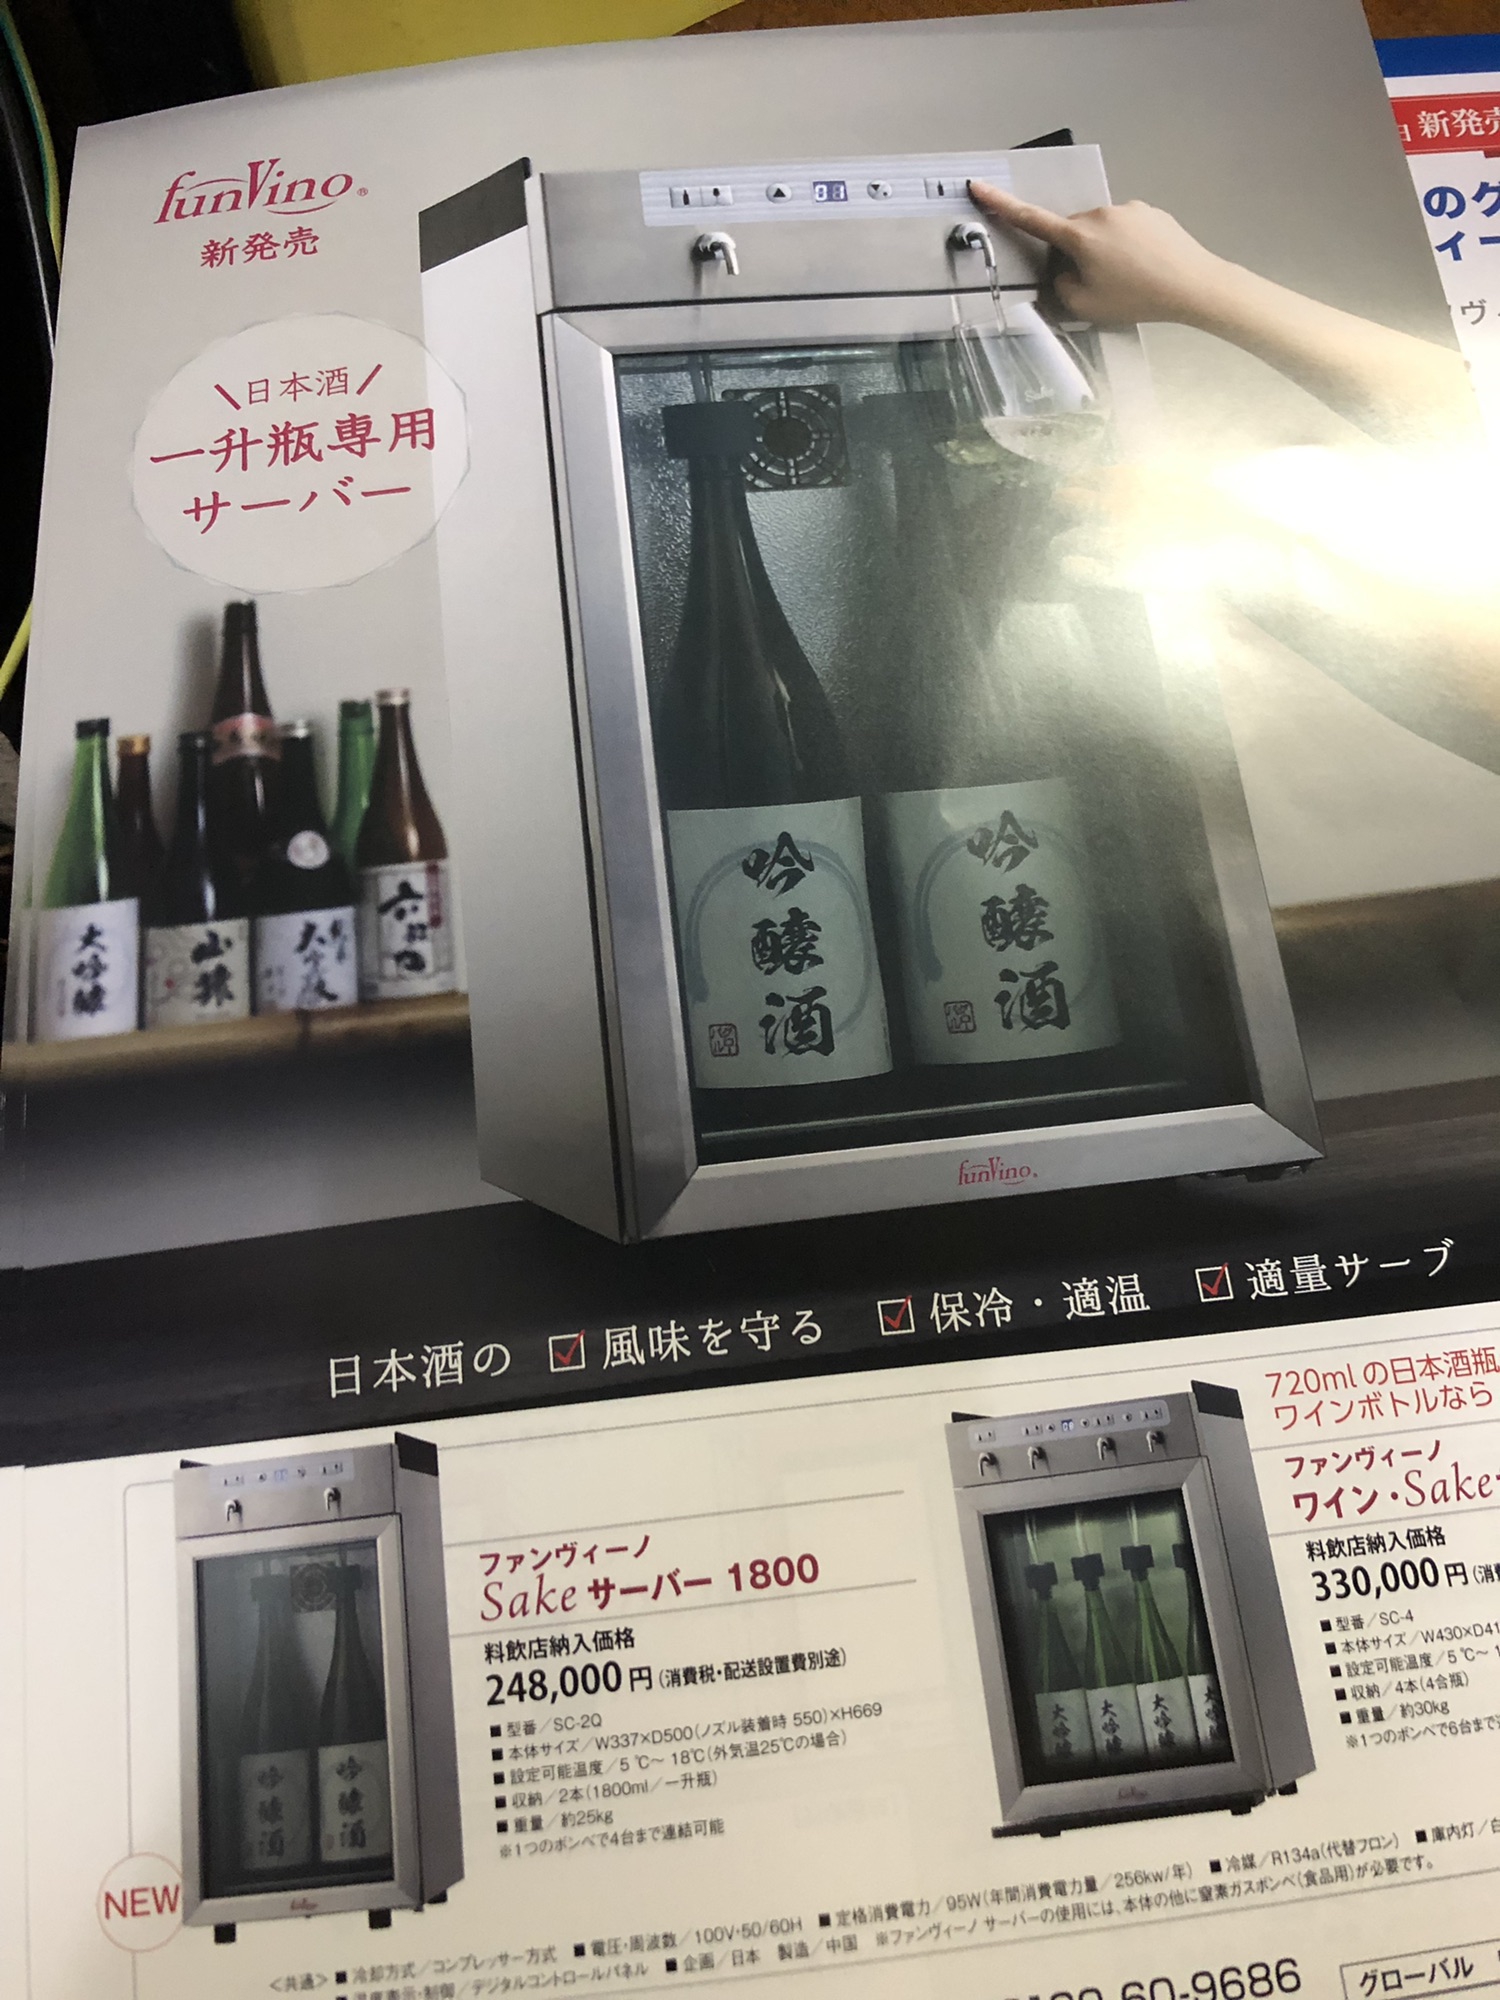 ファンヴィーノワイン・sakeサーバー(sc-4) - ワイン